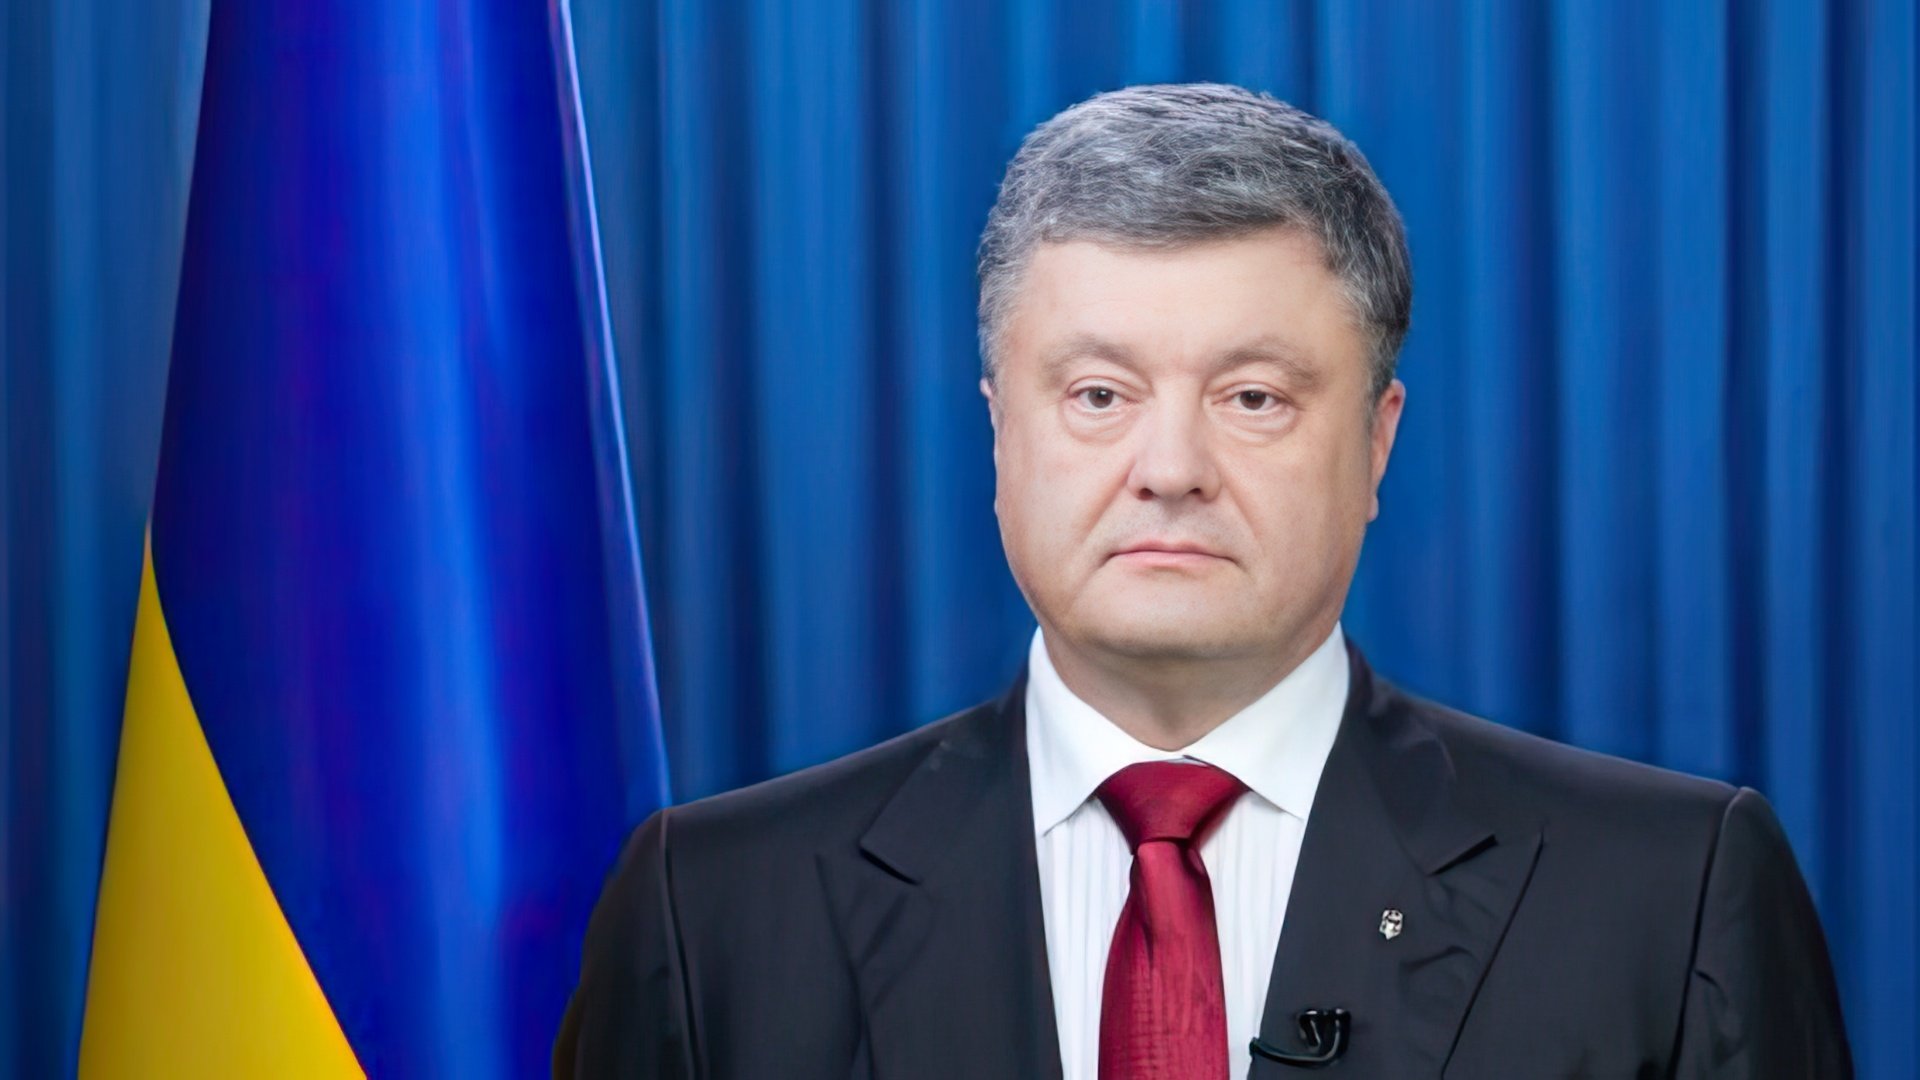 Petro Poroshenko is a President of Ukraine